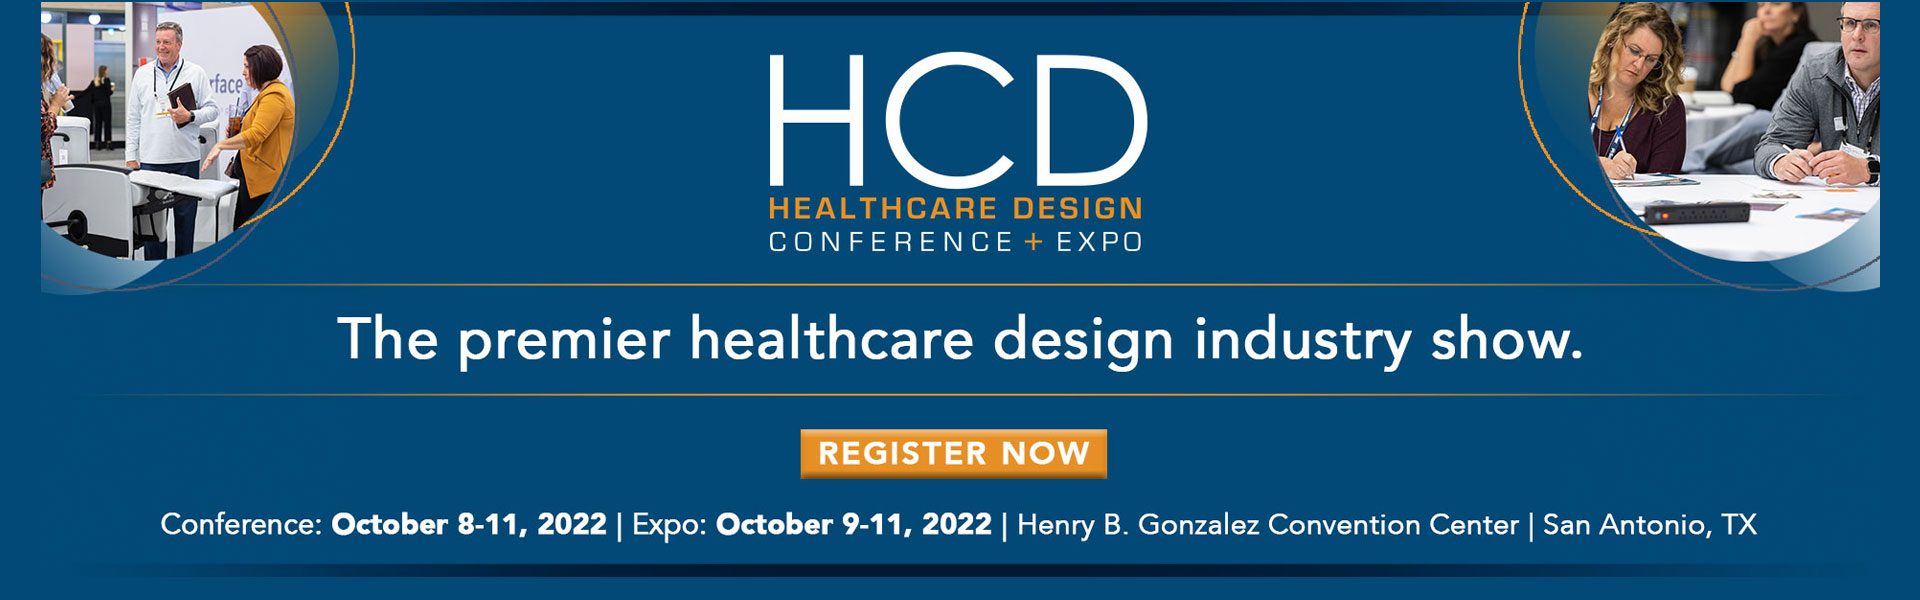 HCD 2022, October 9-11